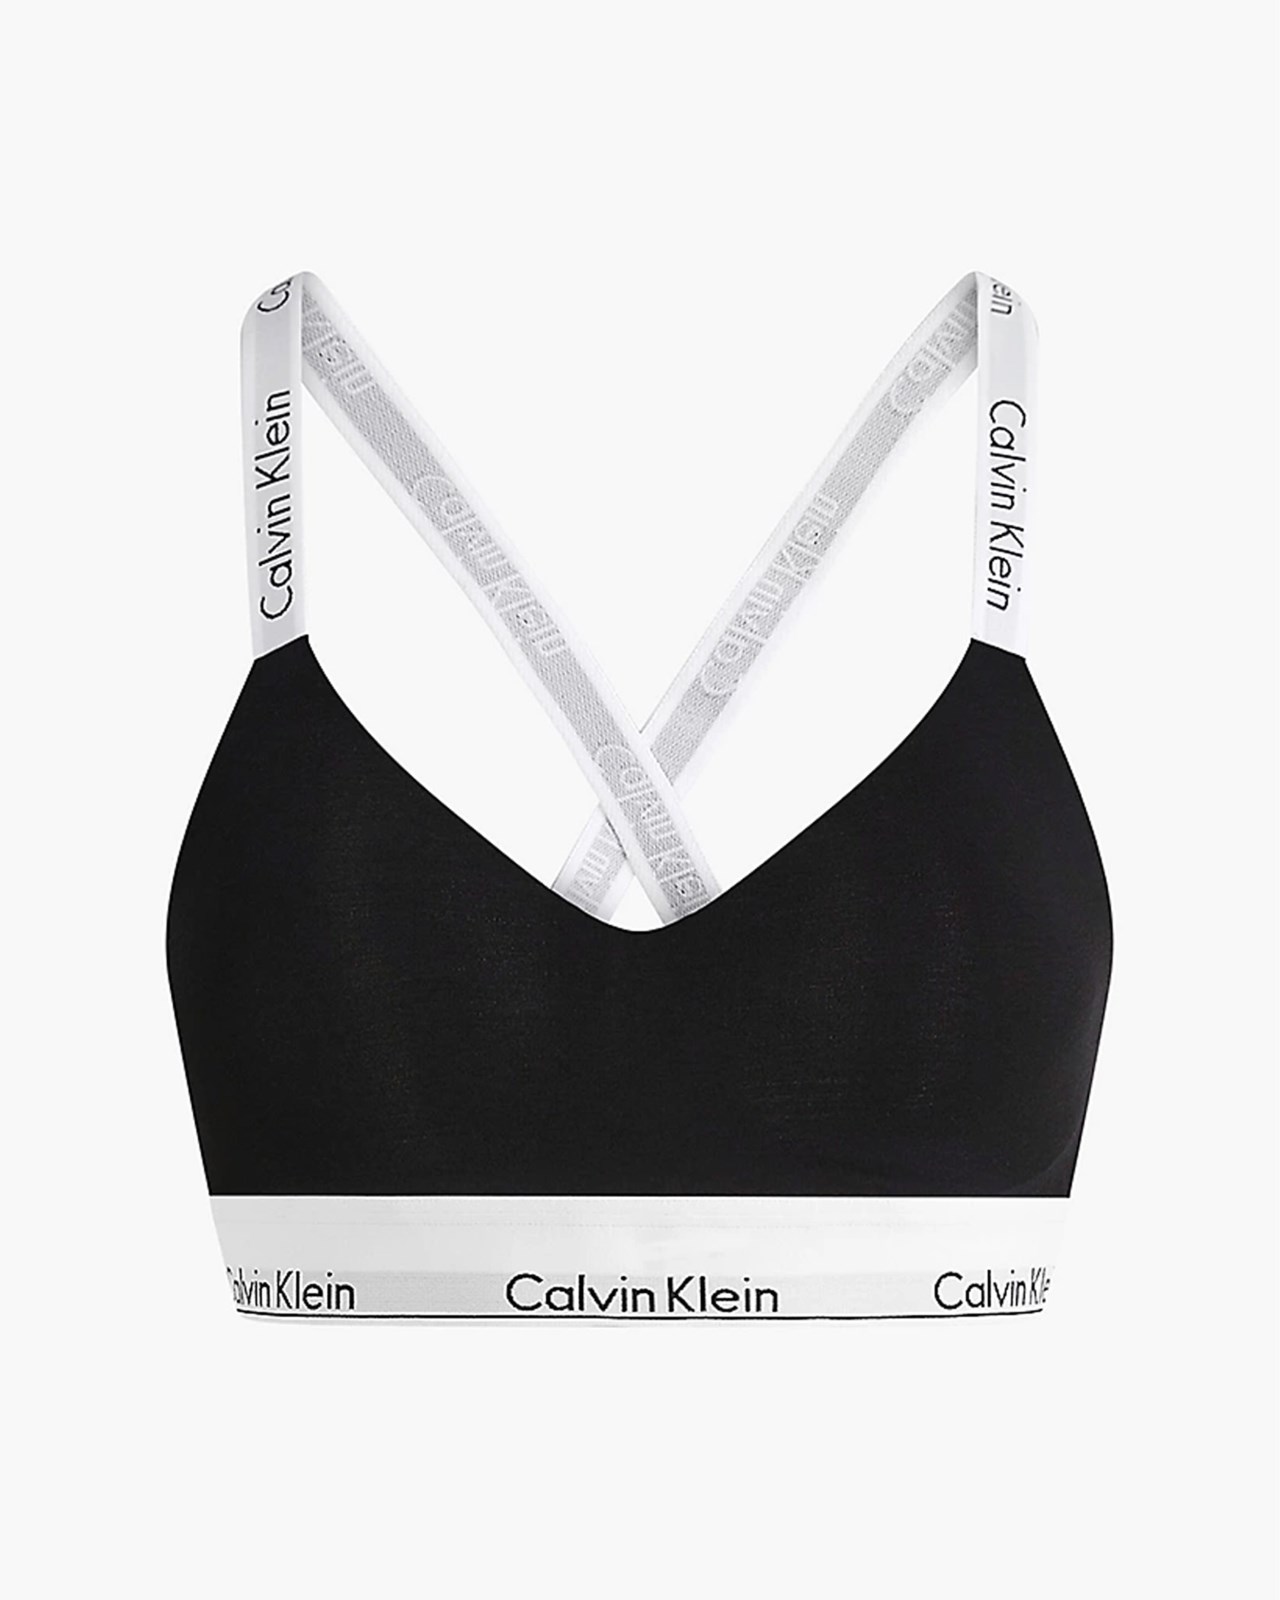 Bras Calvin Klein Calvin Klein Modern Cotton Light Lined Bralette